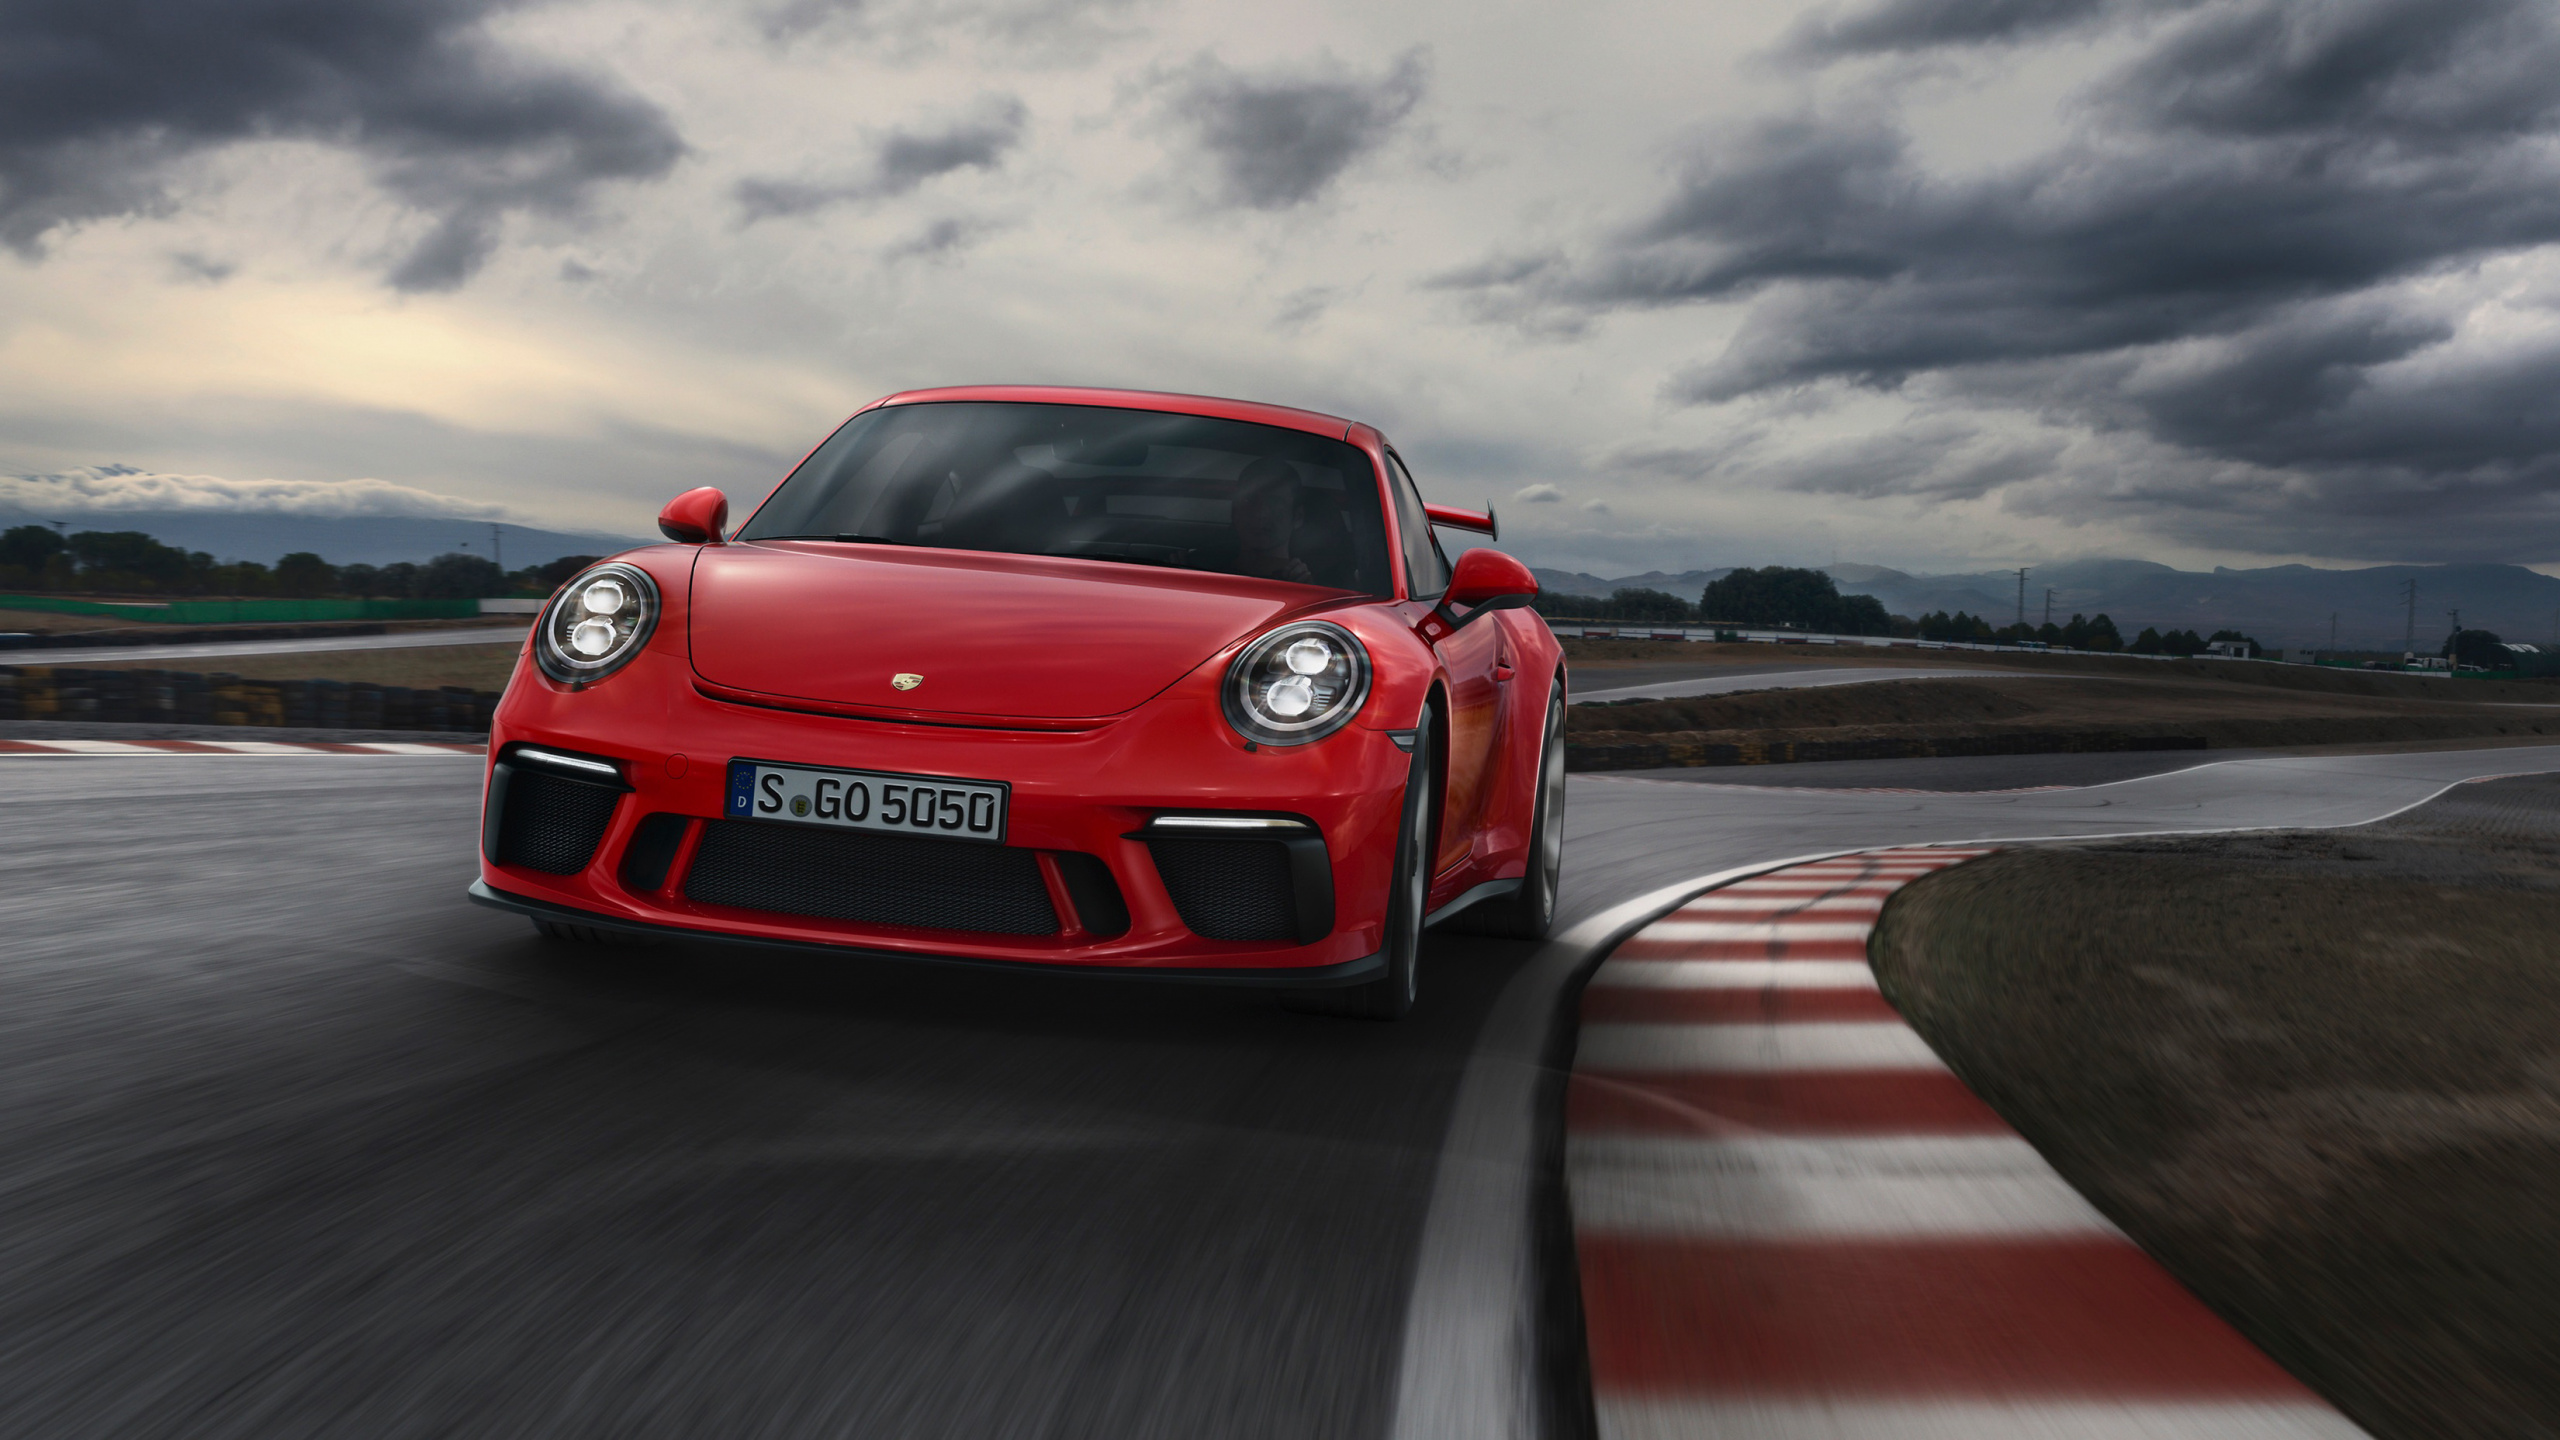 Roter Porsche 911 Unterwegs Bei Bewölktem Himmel. Wallpaper in 2560x1440 Resolution